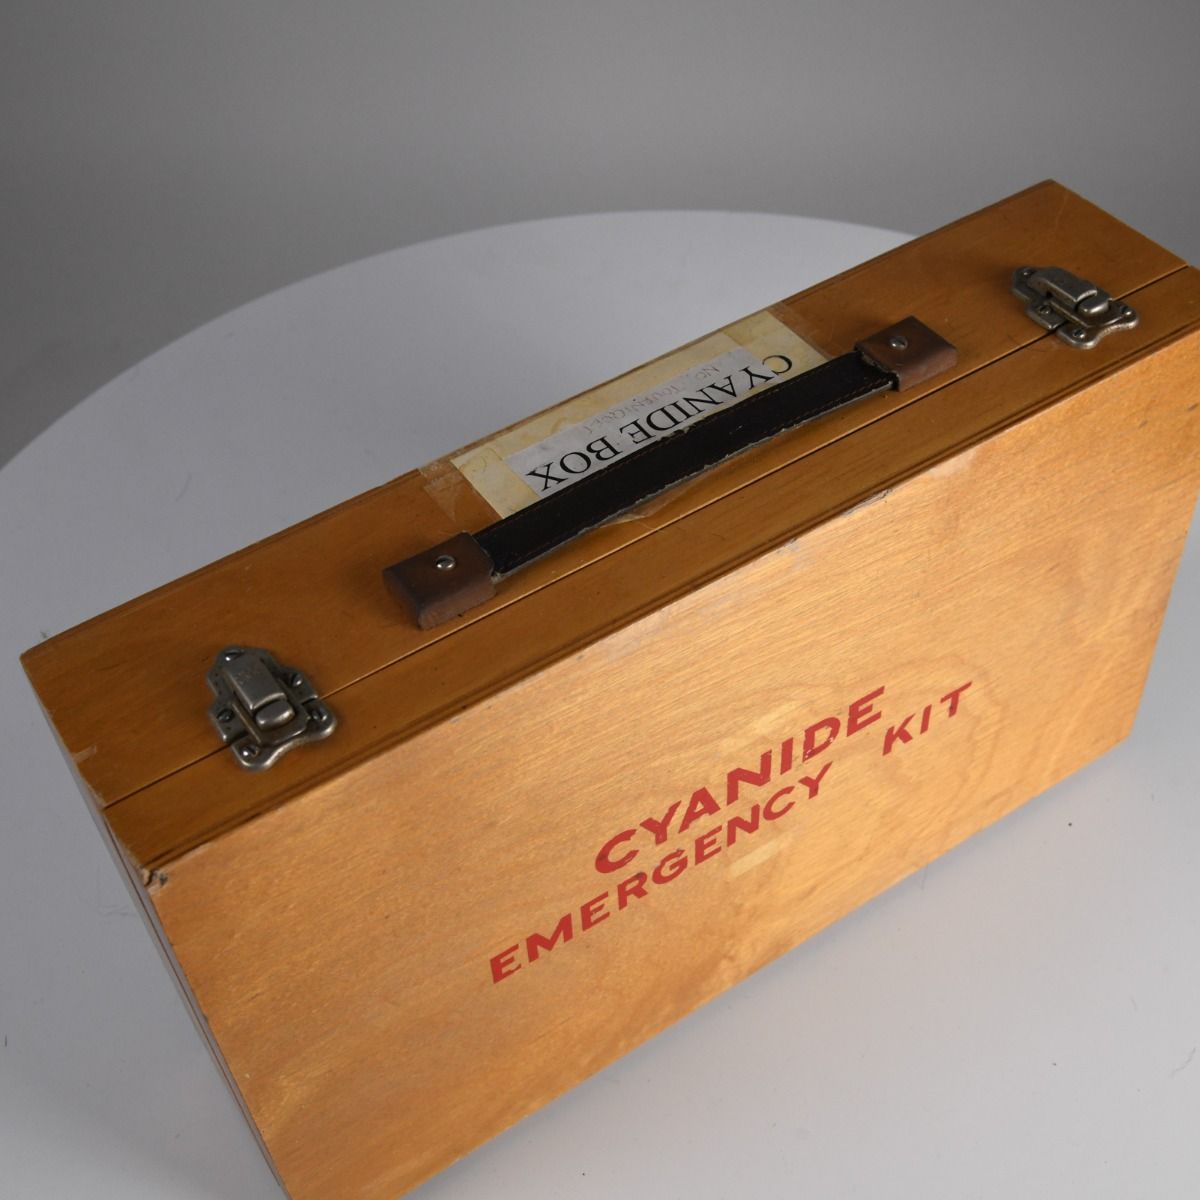 Wooden Cyanide Emergency Kit Box